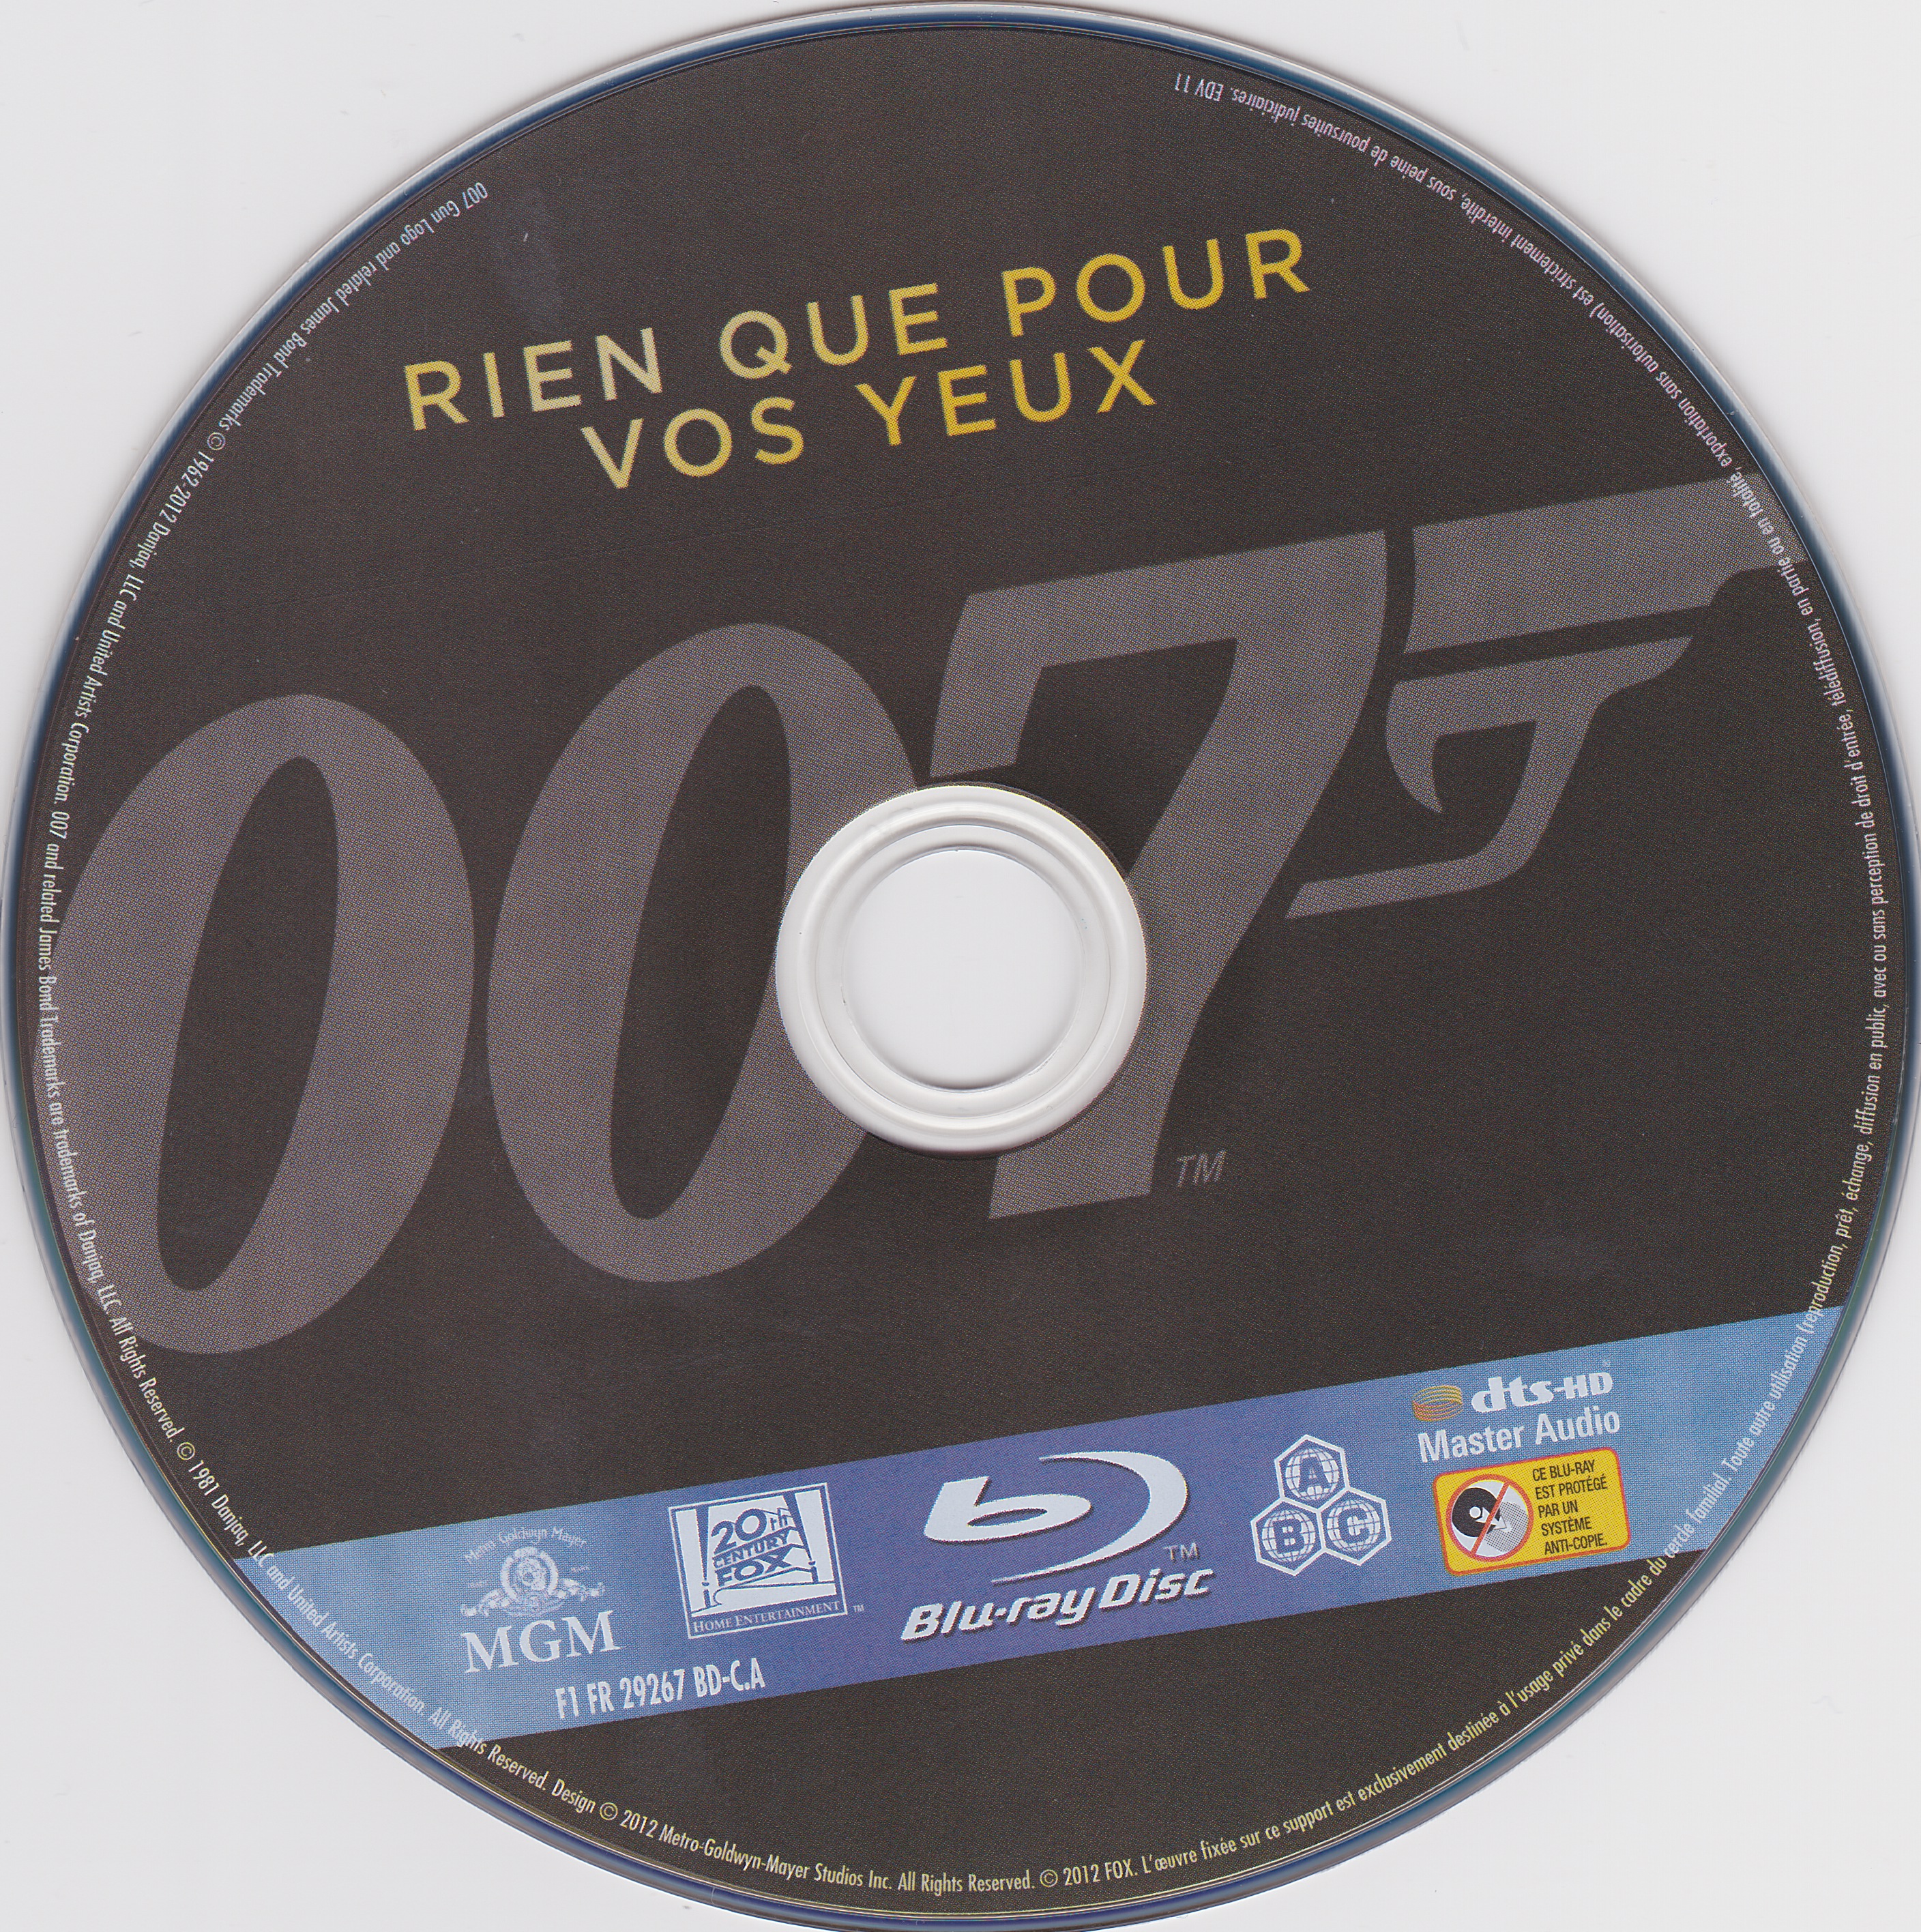 James Bond 007 Rien que pour vos yeux (BLU-RAY)